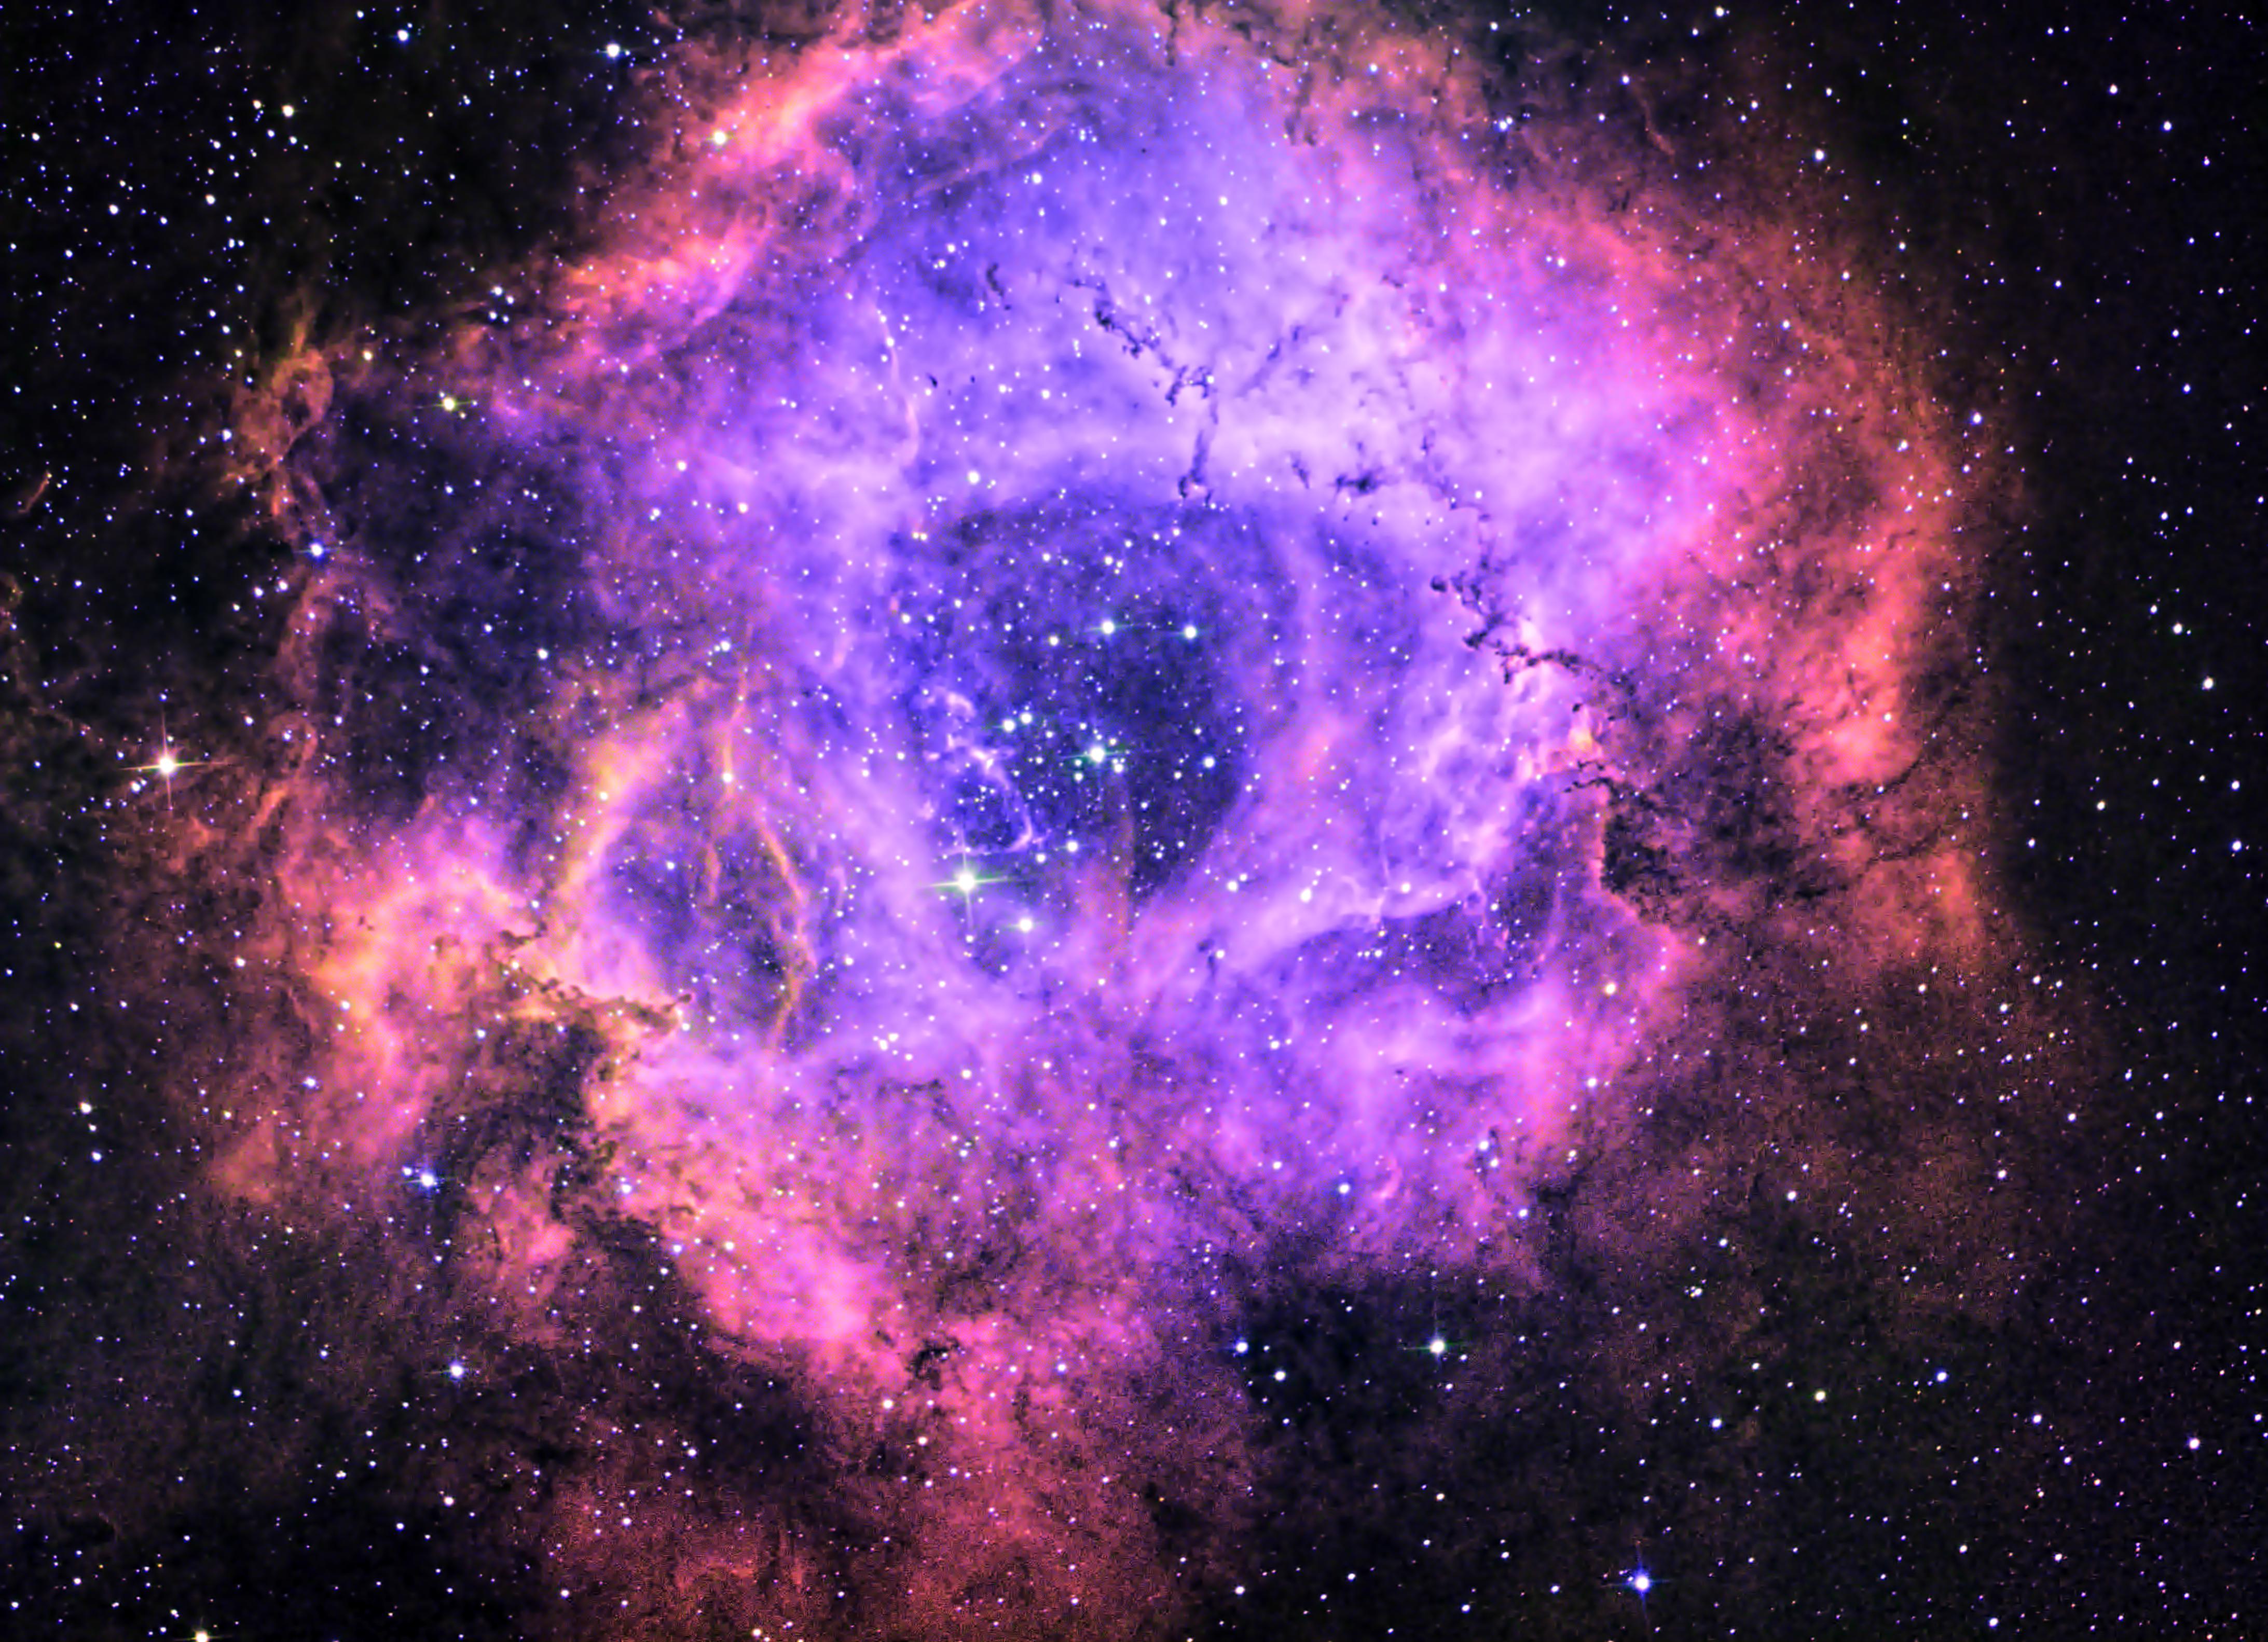 Rosette Nebula in False Colour Narrowband Ha, Sii, Oiii